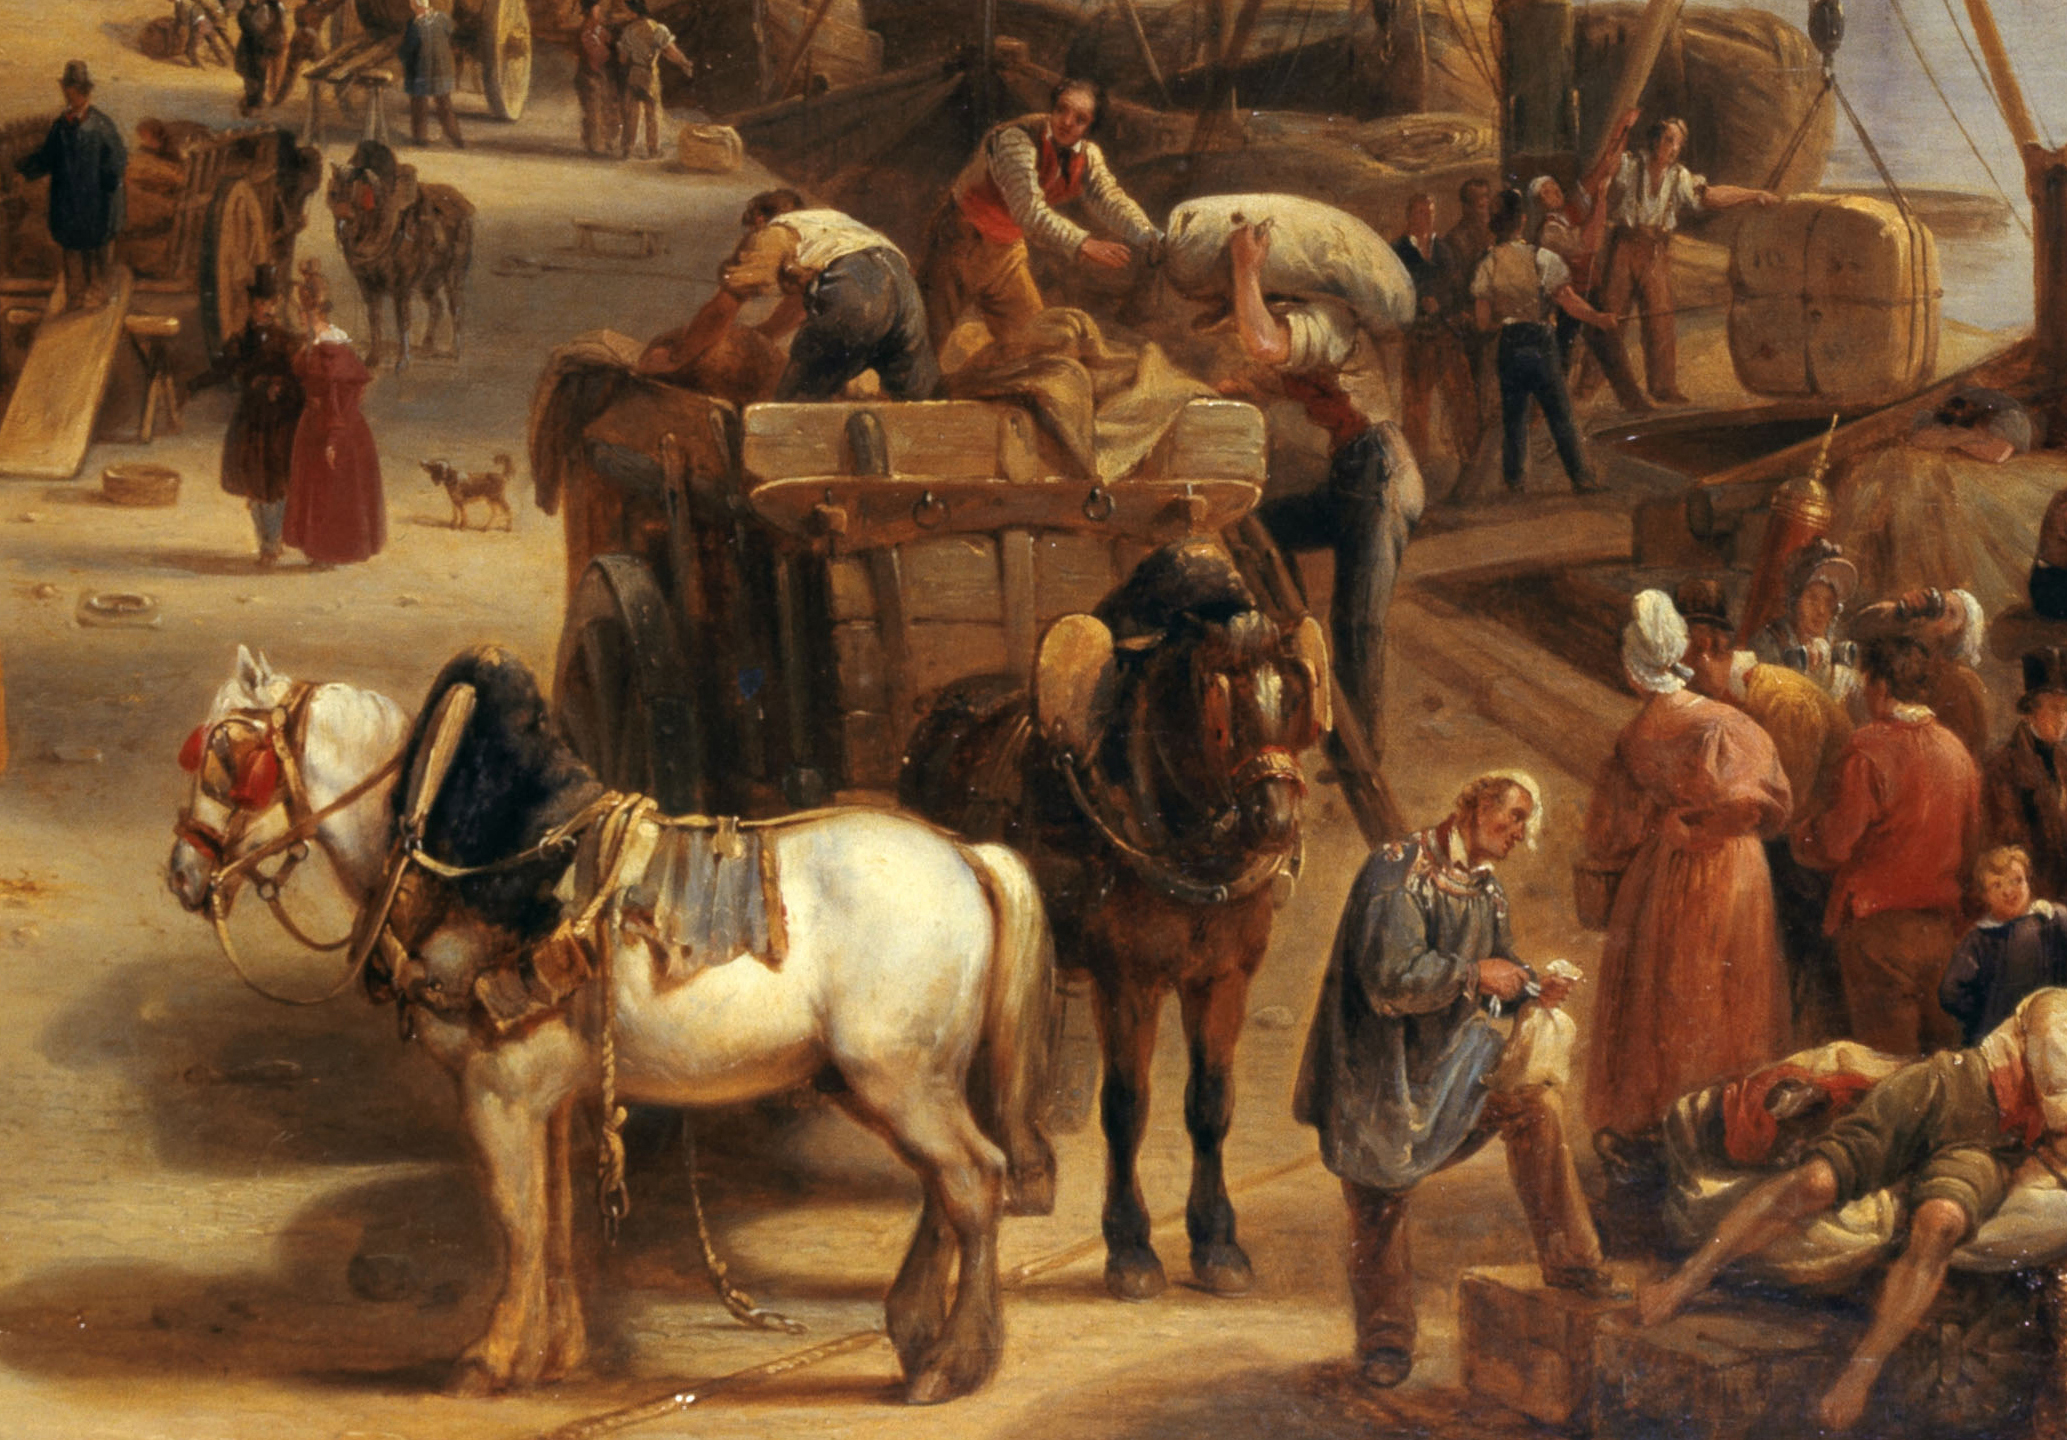 Jean-Auguste Gagnery (nÈ en 1778). "Le port Saint-Nicolas". Huile sur toile, 1834. Paris, musÈe Carnavalet.